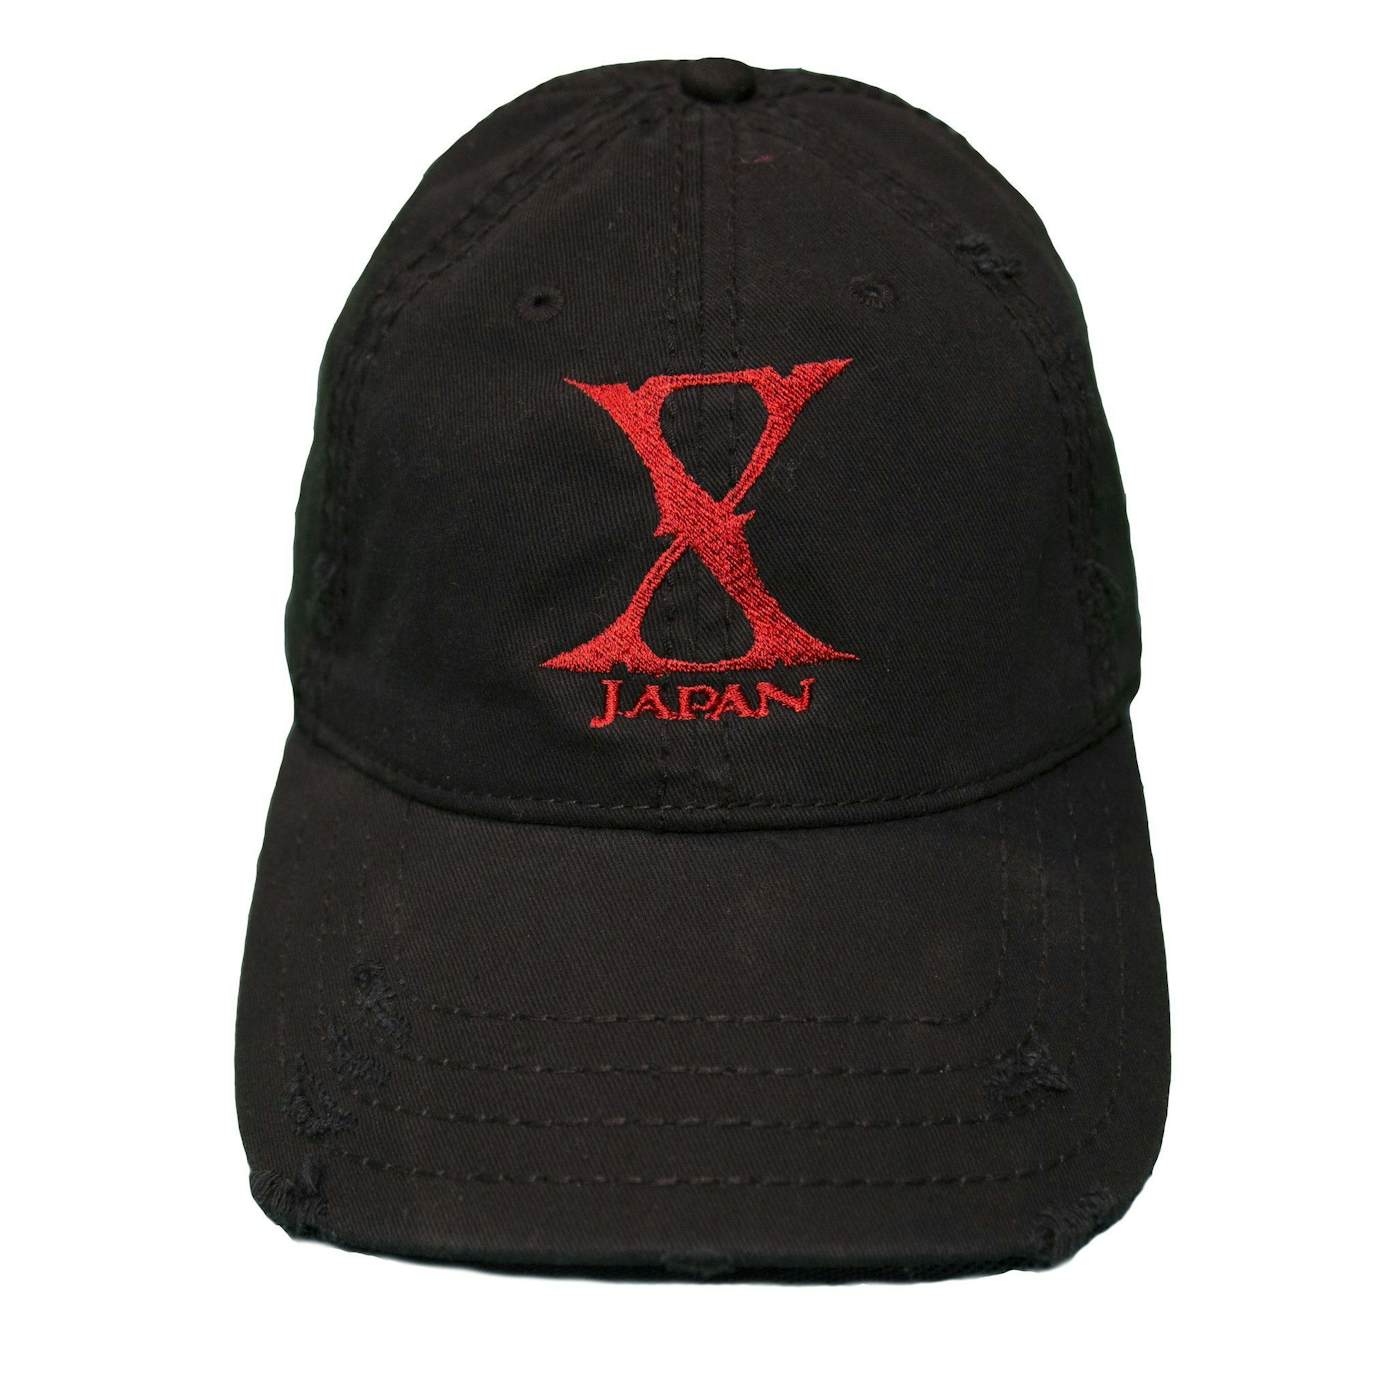 X JAPAN Distressed Cap